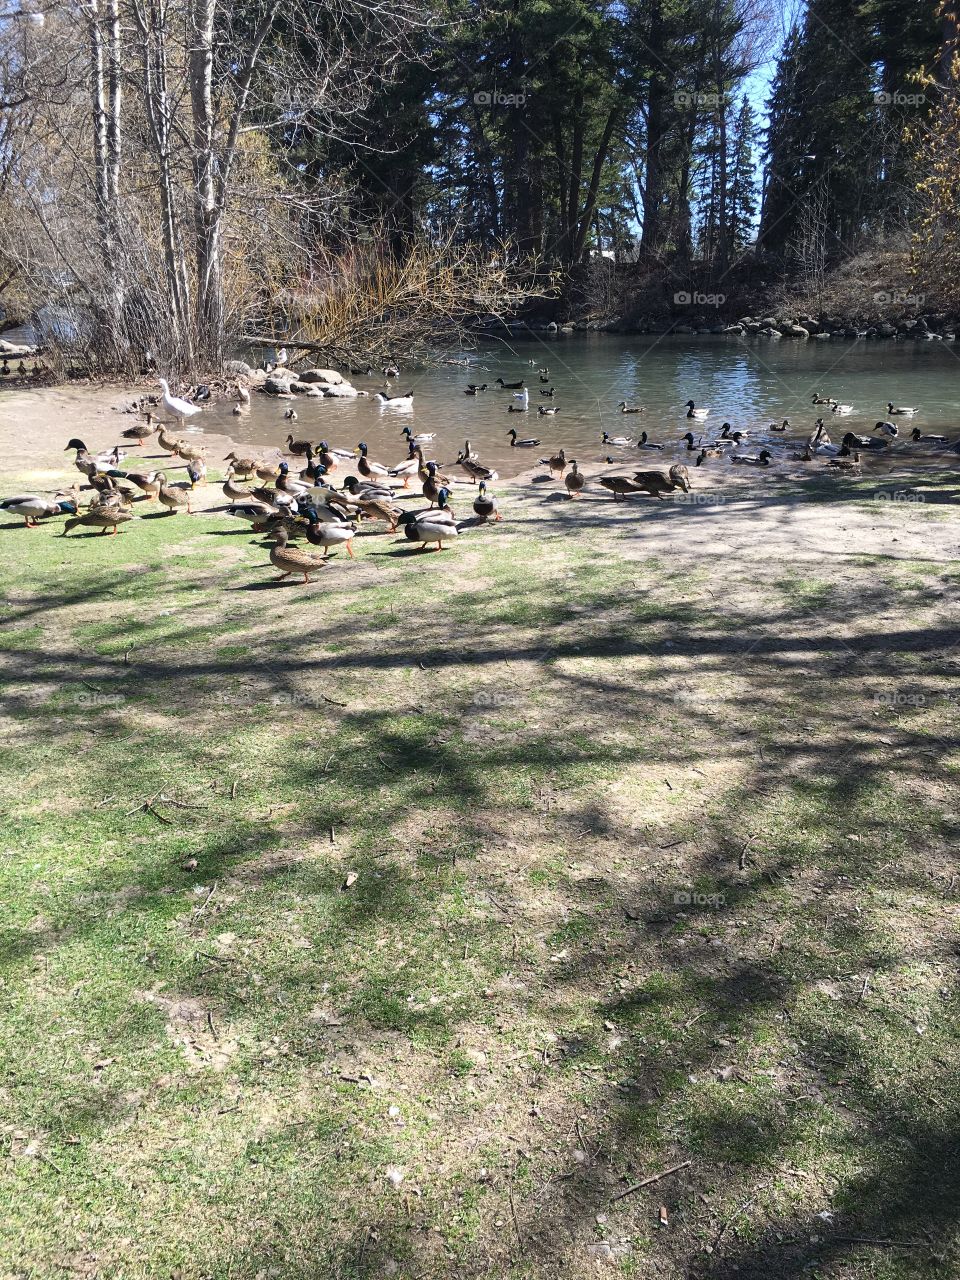 So many ducks!